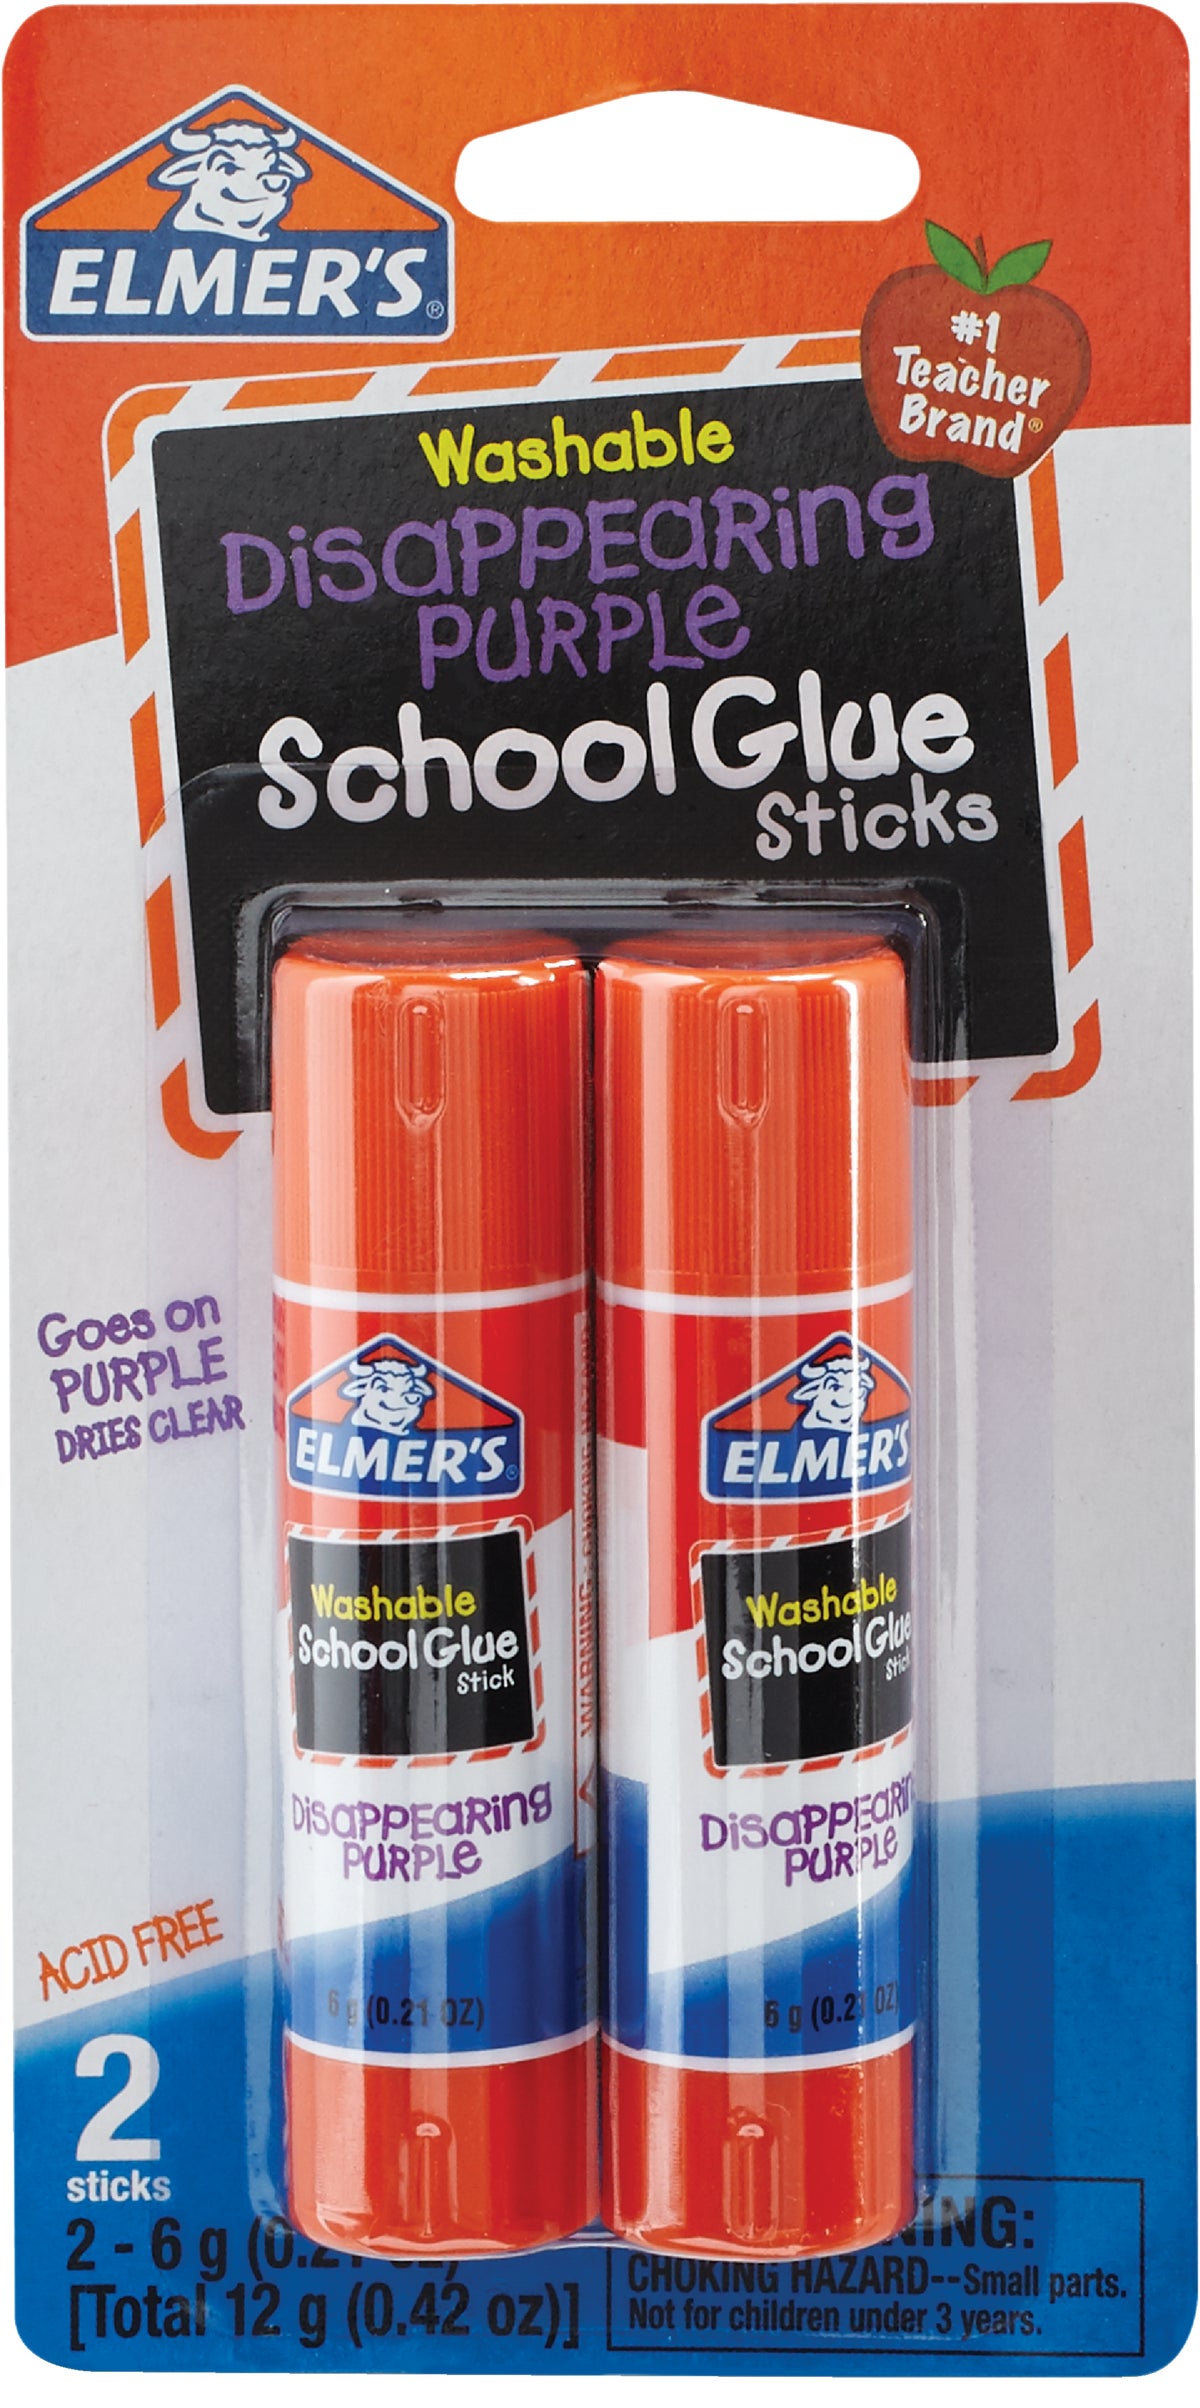 Elmer's Glue Stick Clear 0.21 ounce EACH